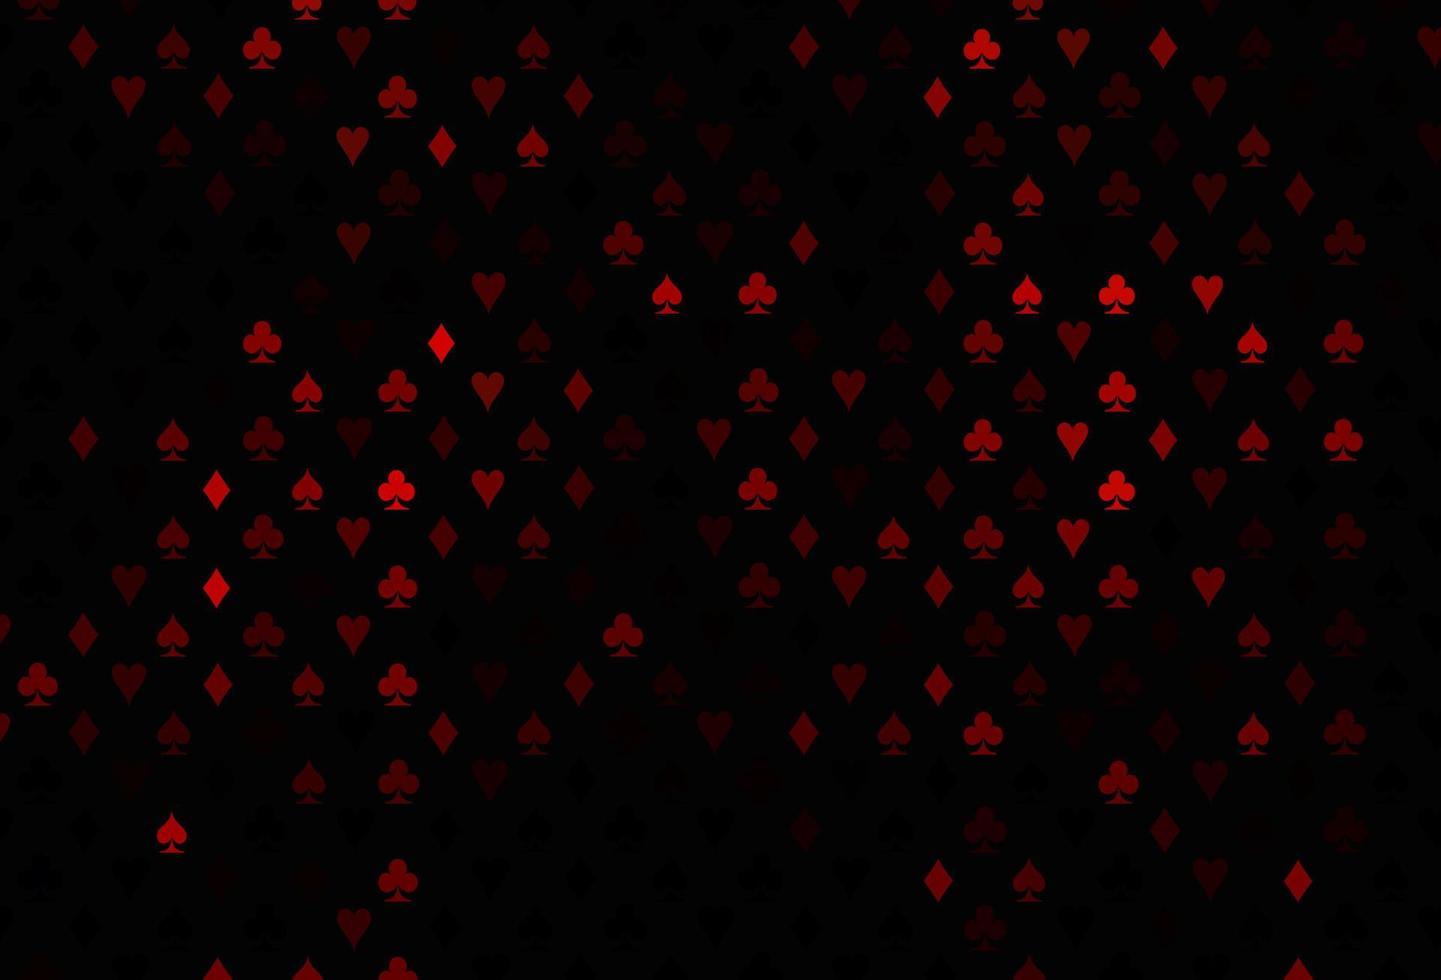 capa de vetor vermelho escuro com símbolos de aposta.